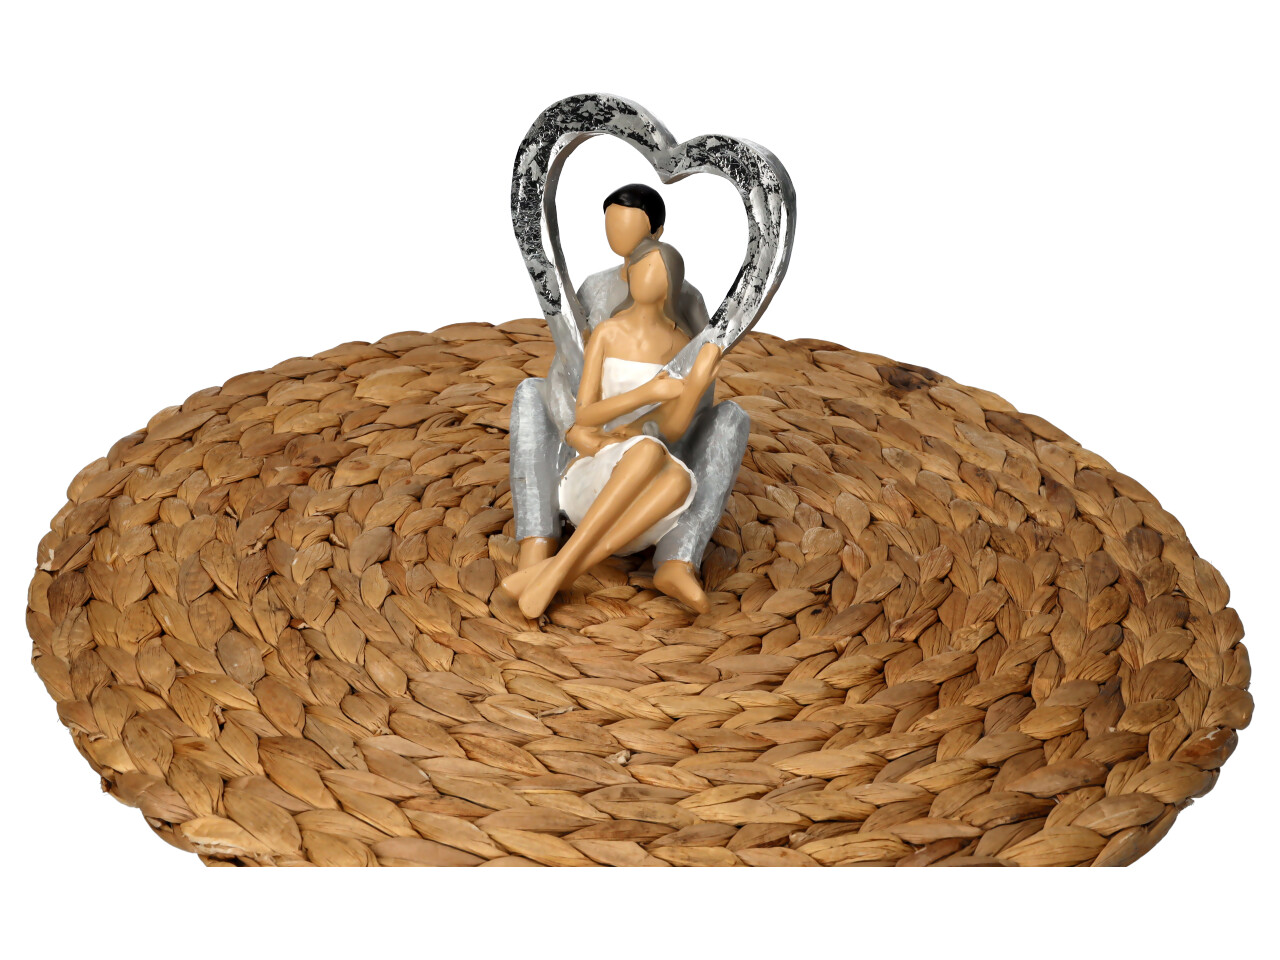 Liebespaar Figur sitzend auf Unterlage halten ein silber Herz das Oberkörper umrandet Vorderansicht